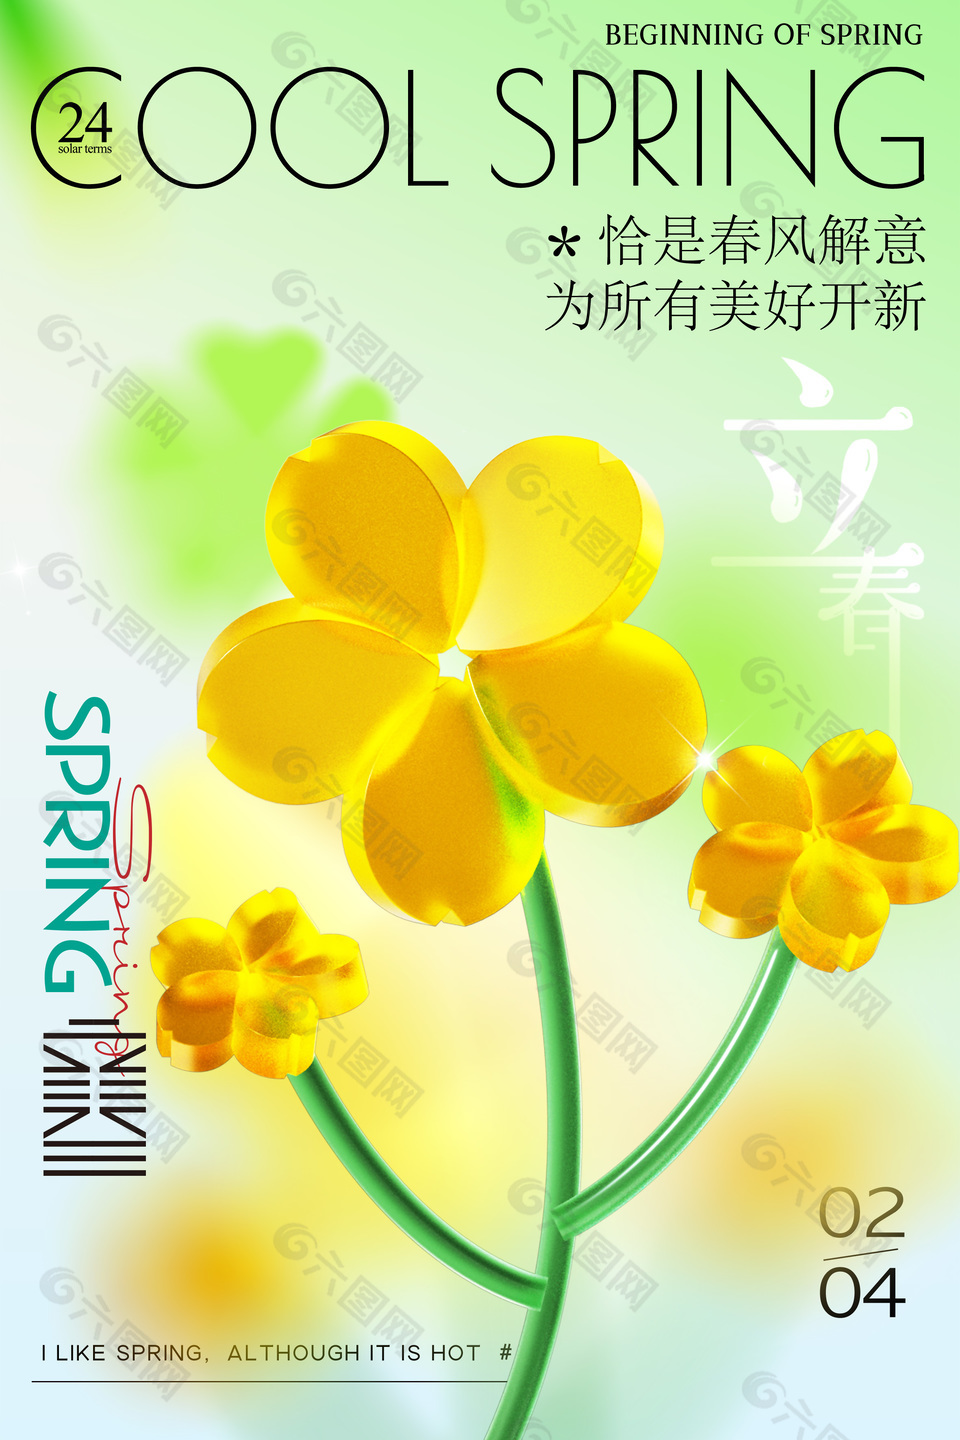 绿色清新立春节气玻璃质感元素创意海报